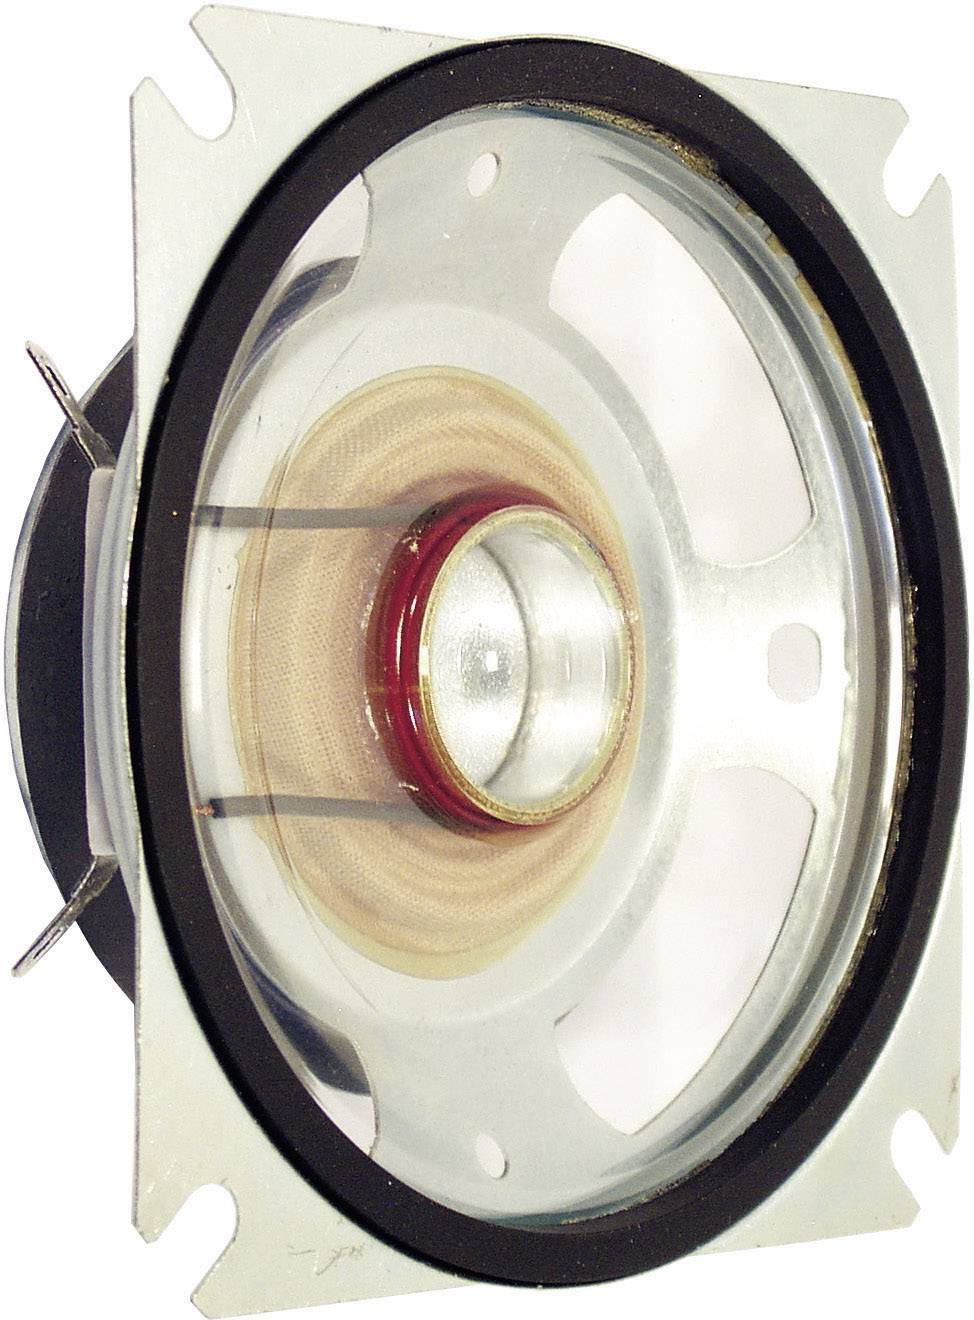 VISATON WASSERFESTER 8 cm (3,3\") BREITBANDLAUTSPRECHER - Mit transparenter Kunststoffmembran und Gu